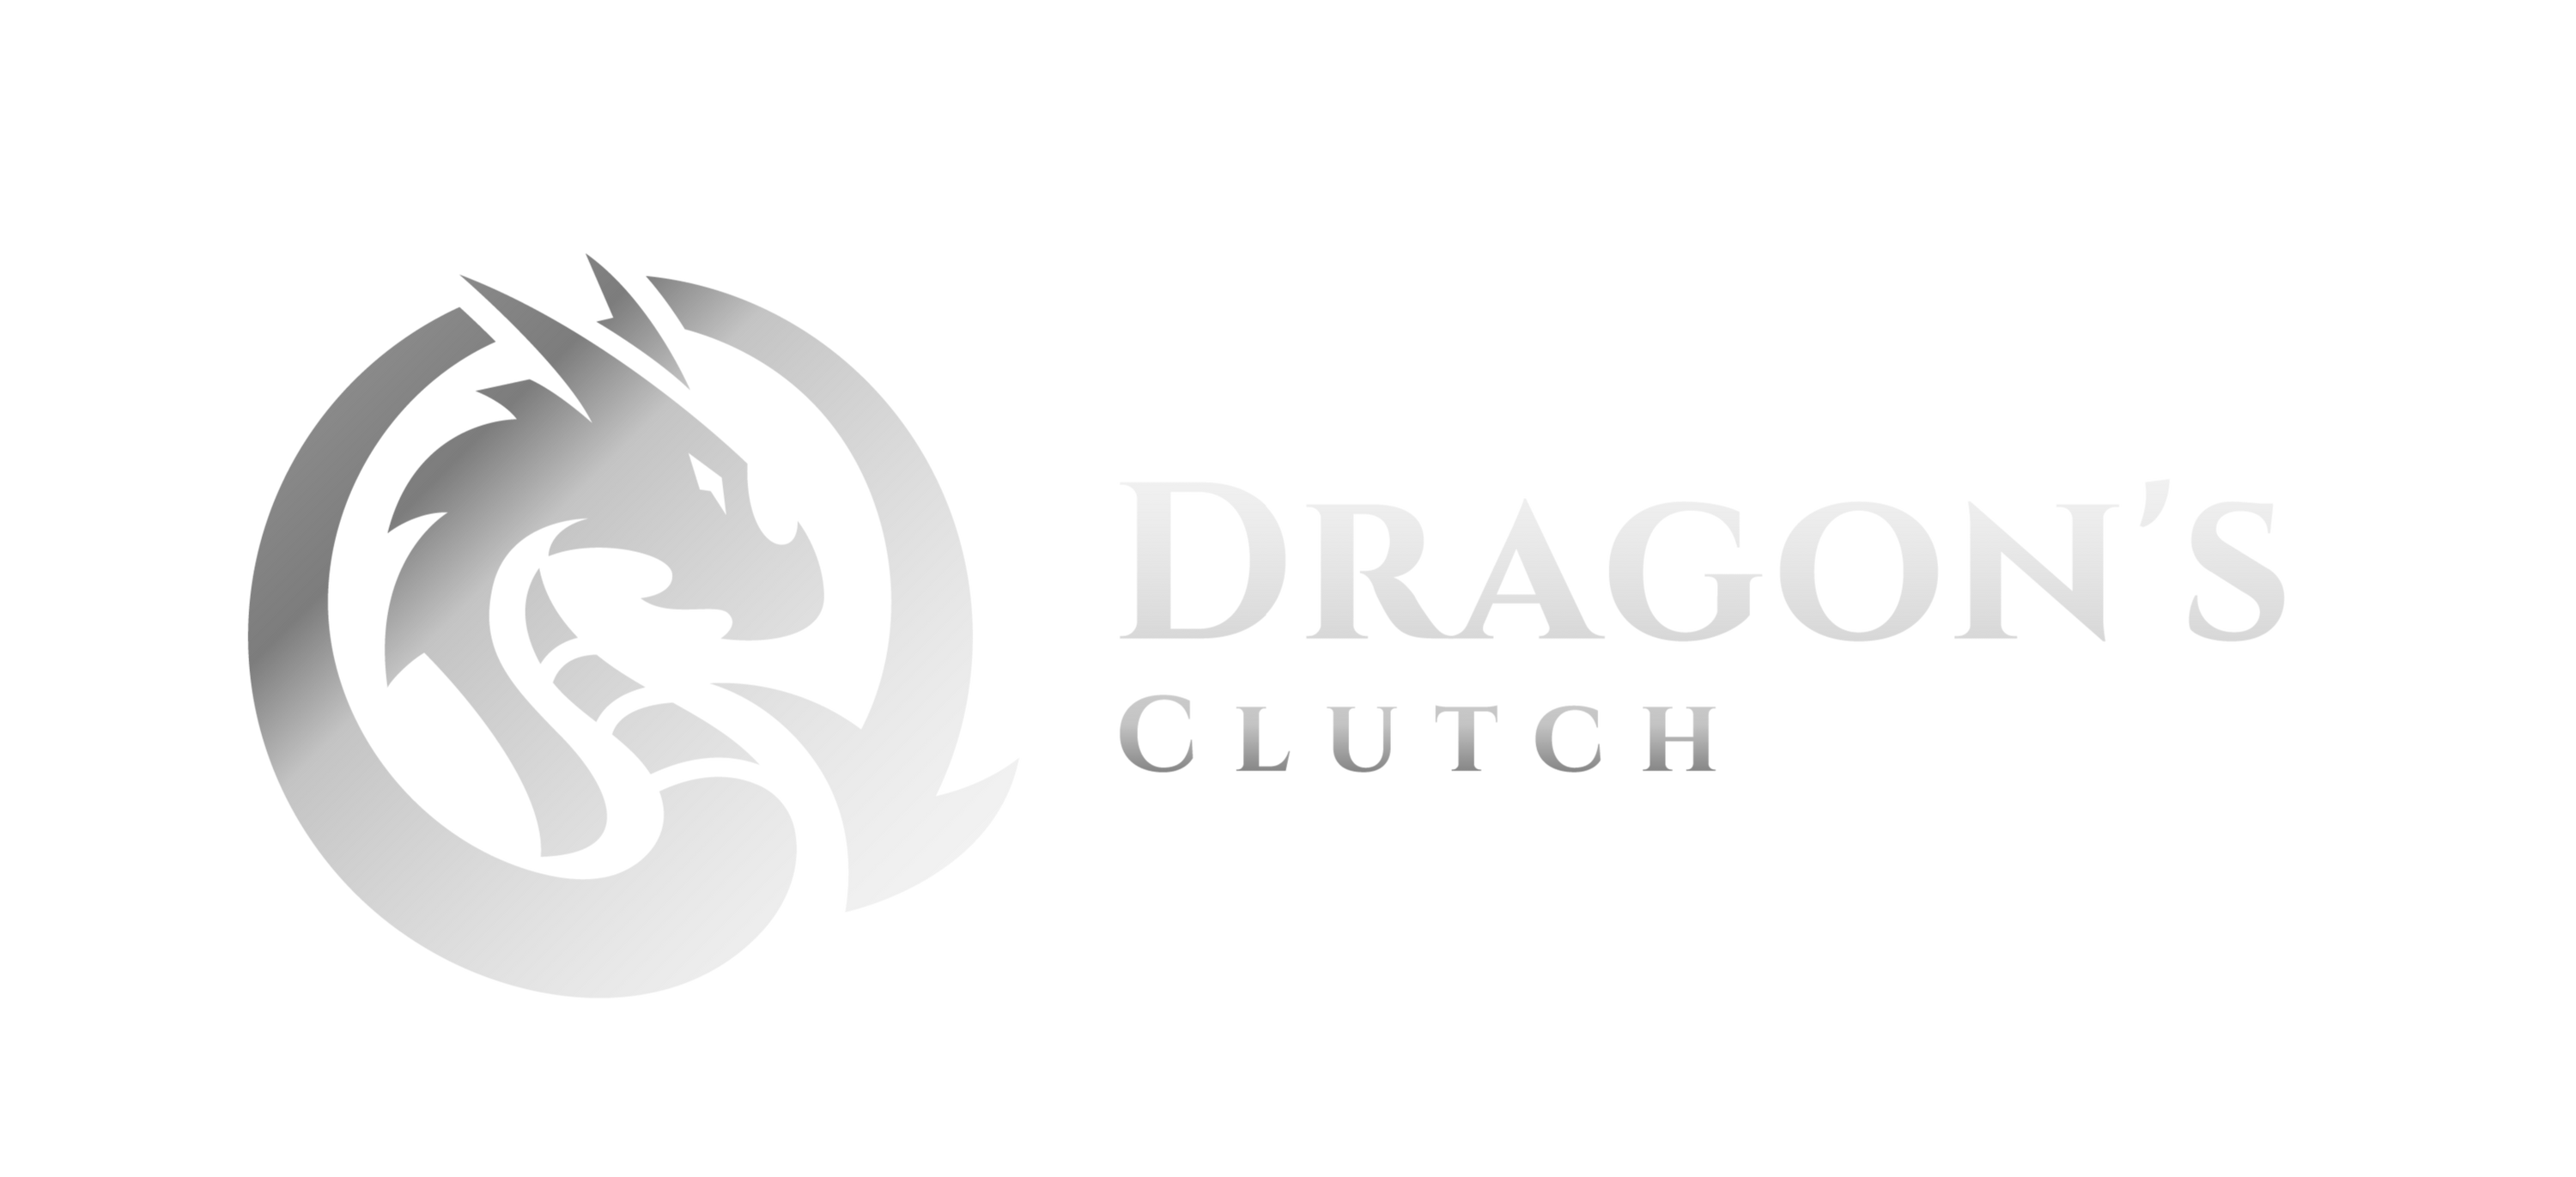 Dragon's Clutch Jewelry